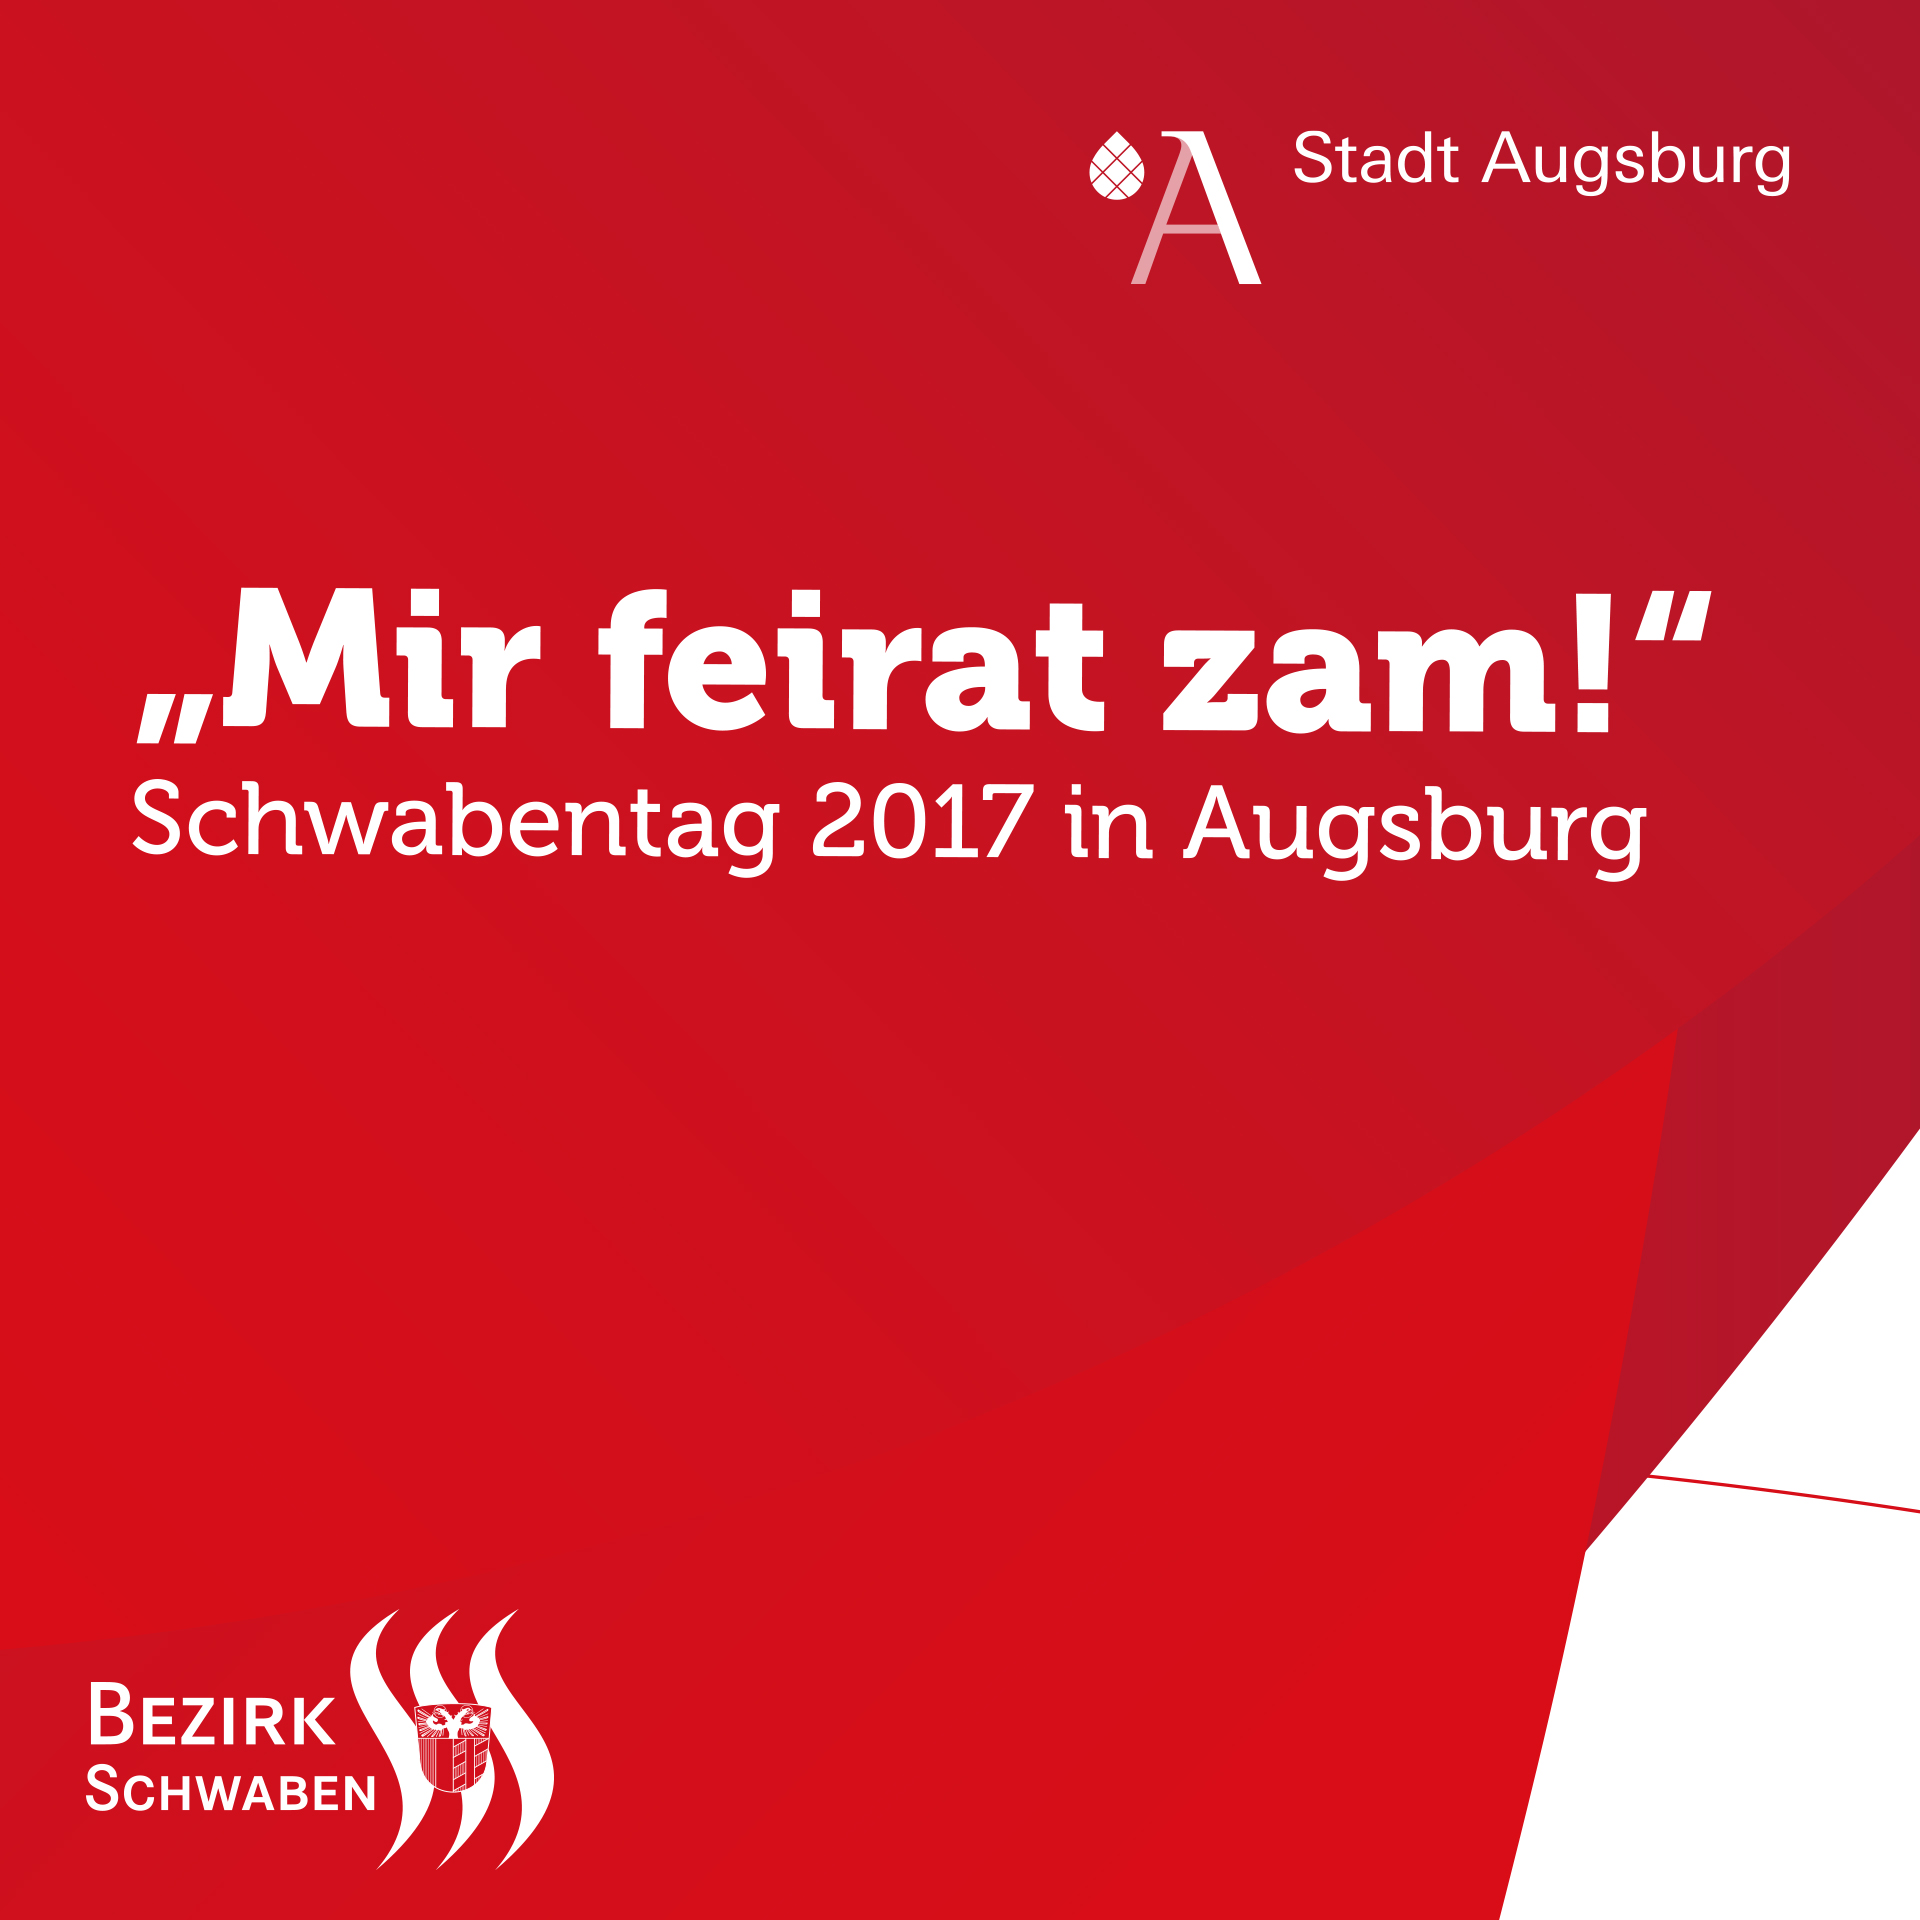 „Mir feirat zam!“ – Schwabentag am 23. September 2017 in Augsburg